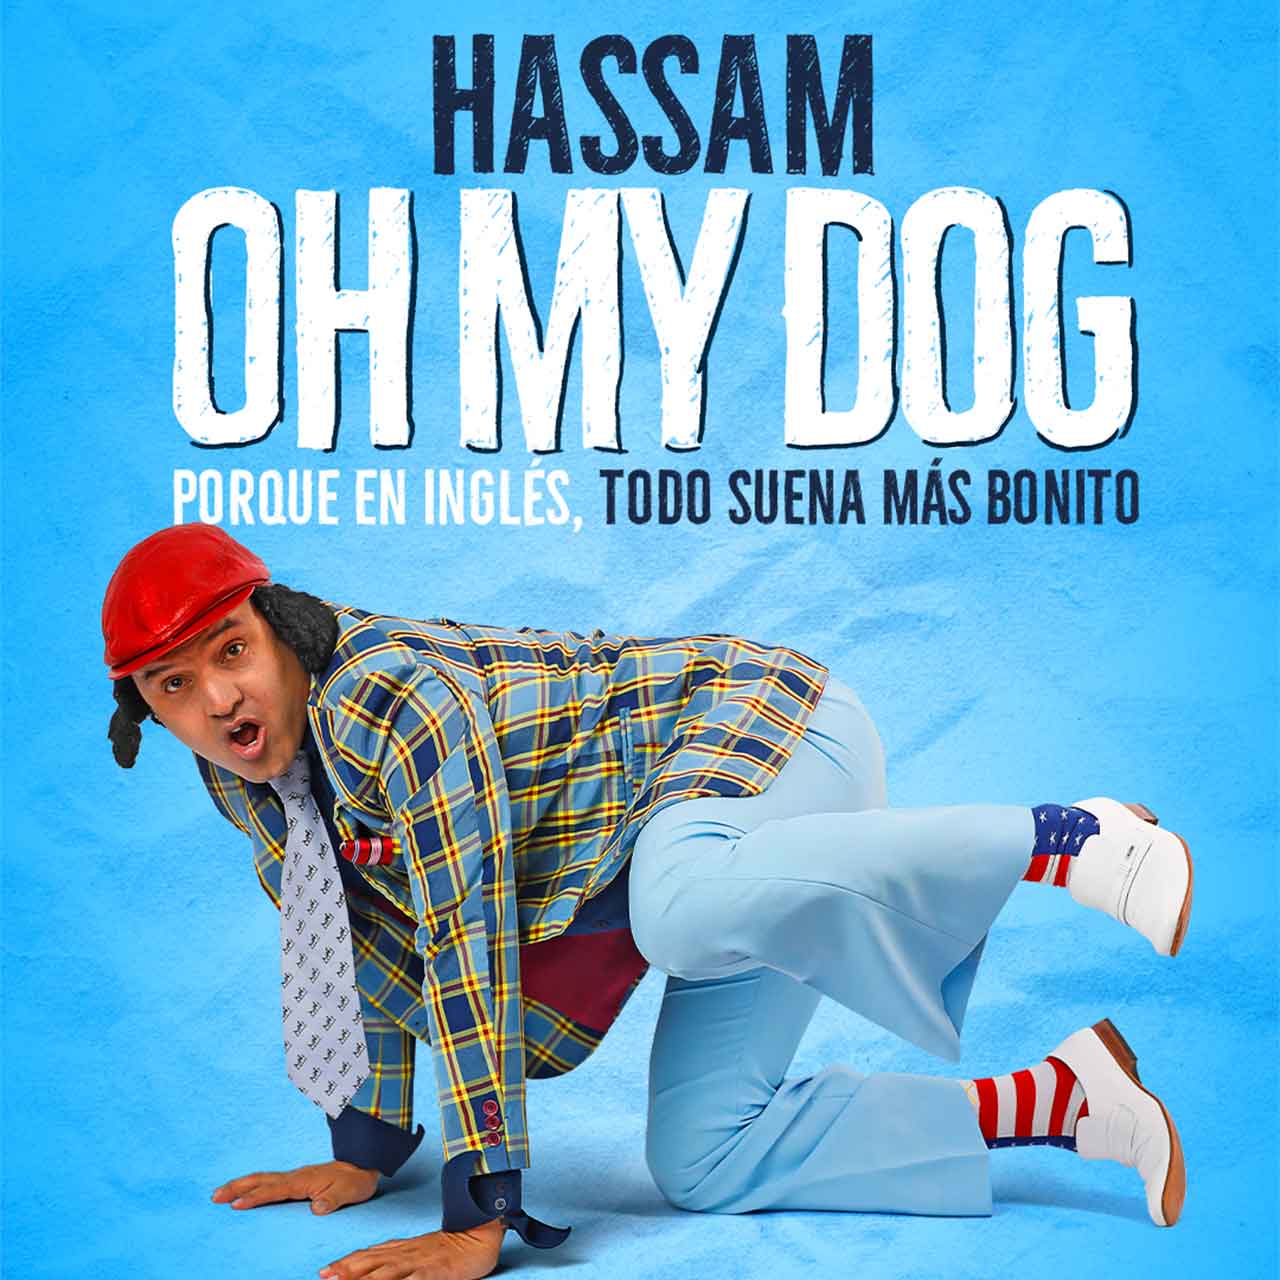 Hassam estrenará su Stand-Up Comedy con lecciones de inglés de alto nivel